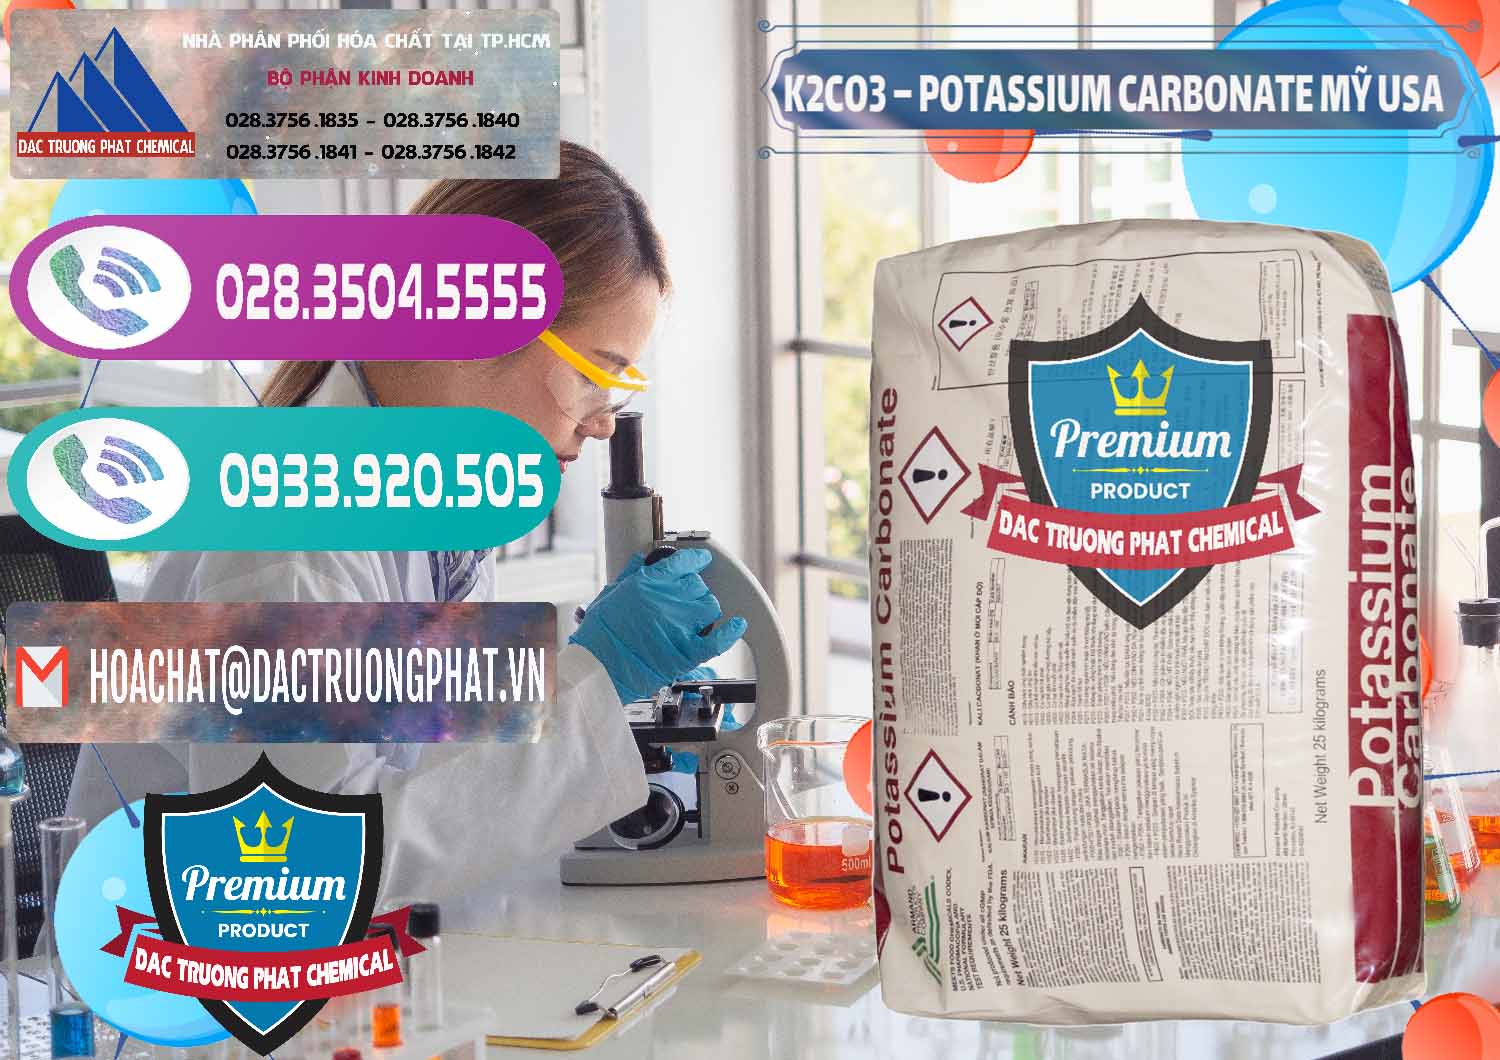 Nơi chuyên bán ( cung ứng ) K2Co3 – Potassium Carbonate Mỹ USA - 0082 - Cty cung ứng & phân phối hóa chất tại TP.HCM - hoachatxulynuoc.com